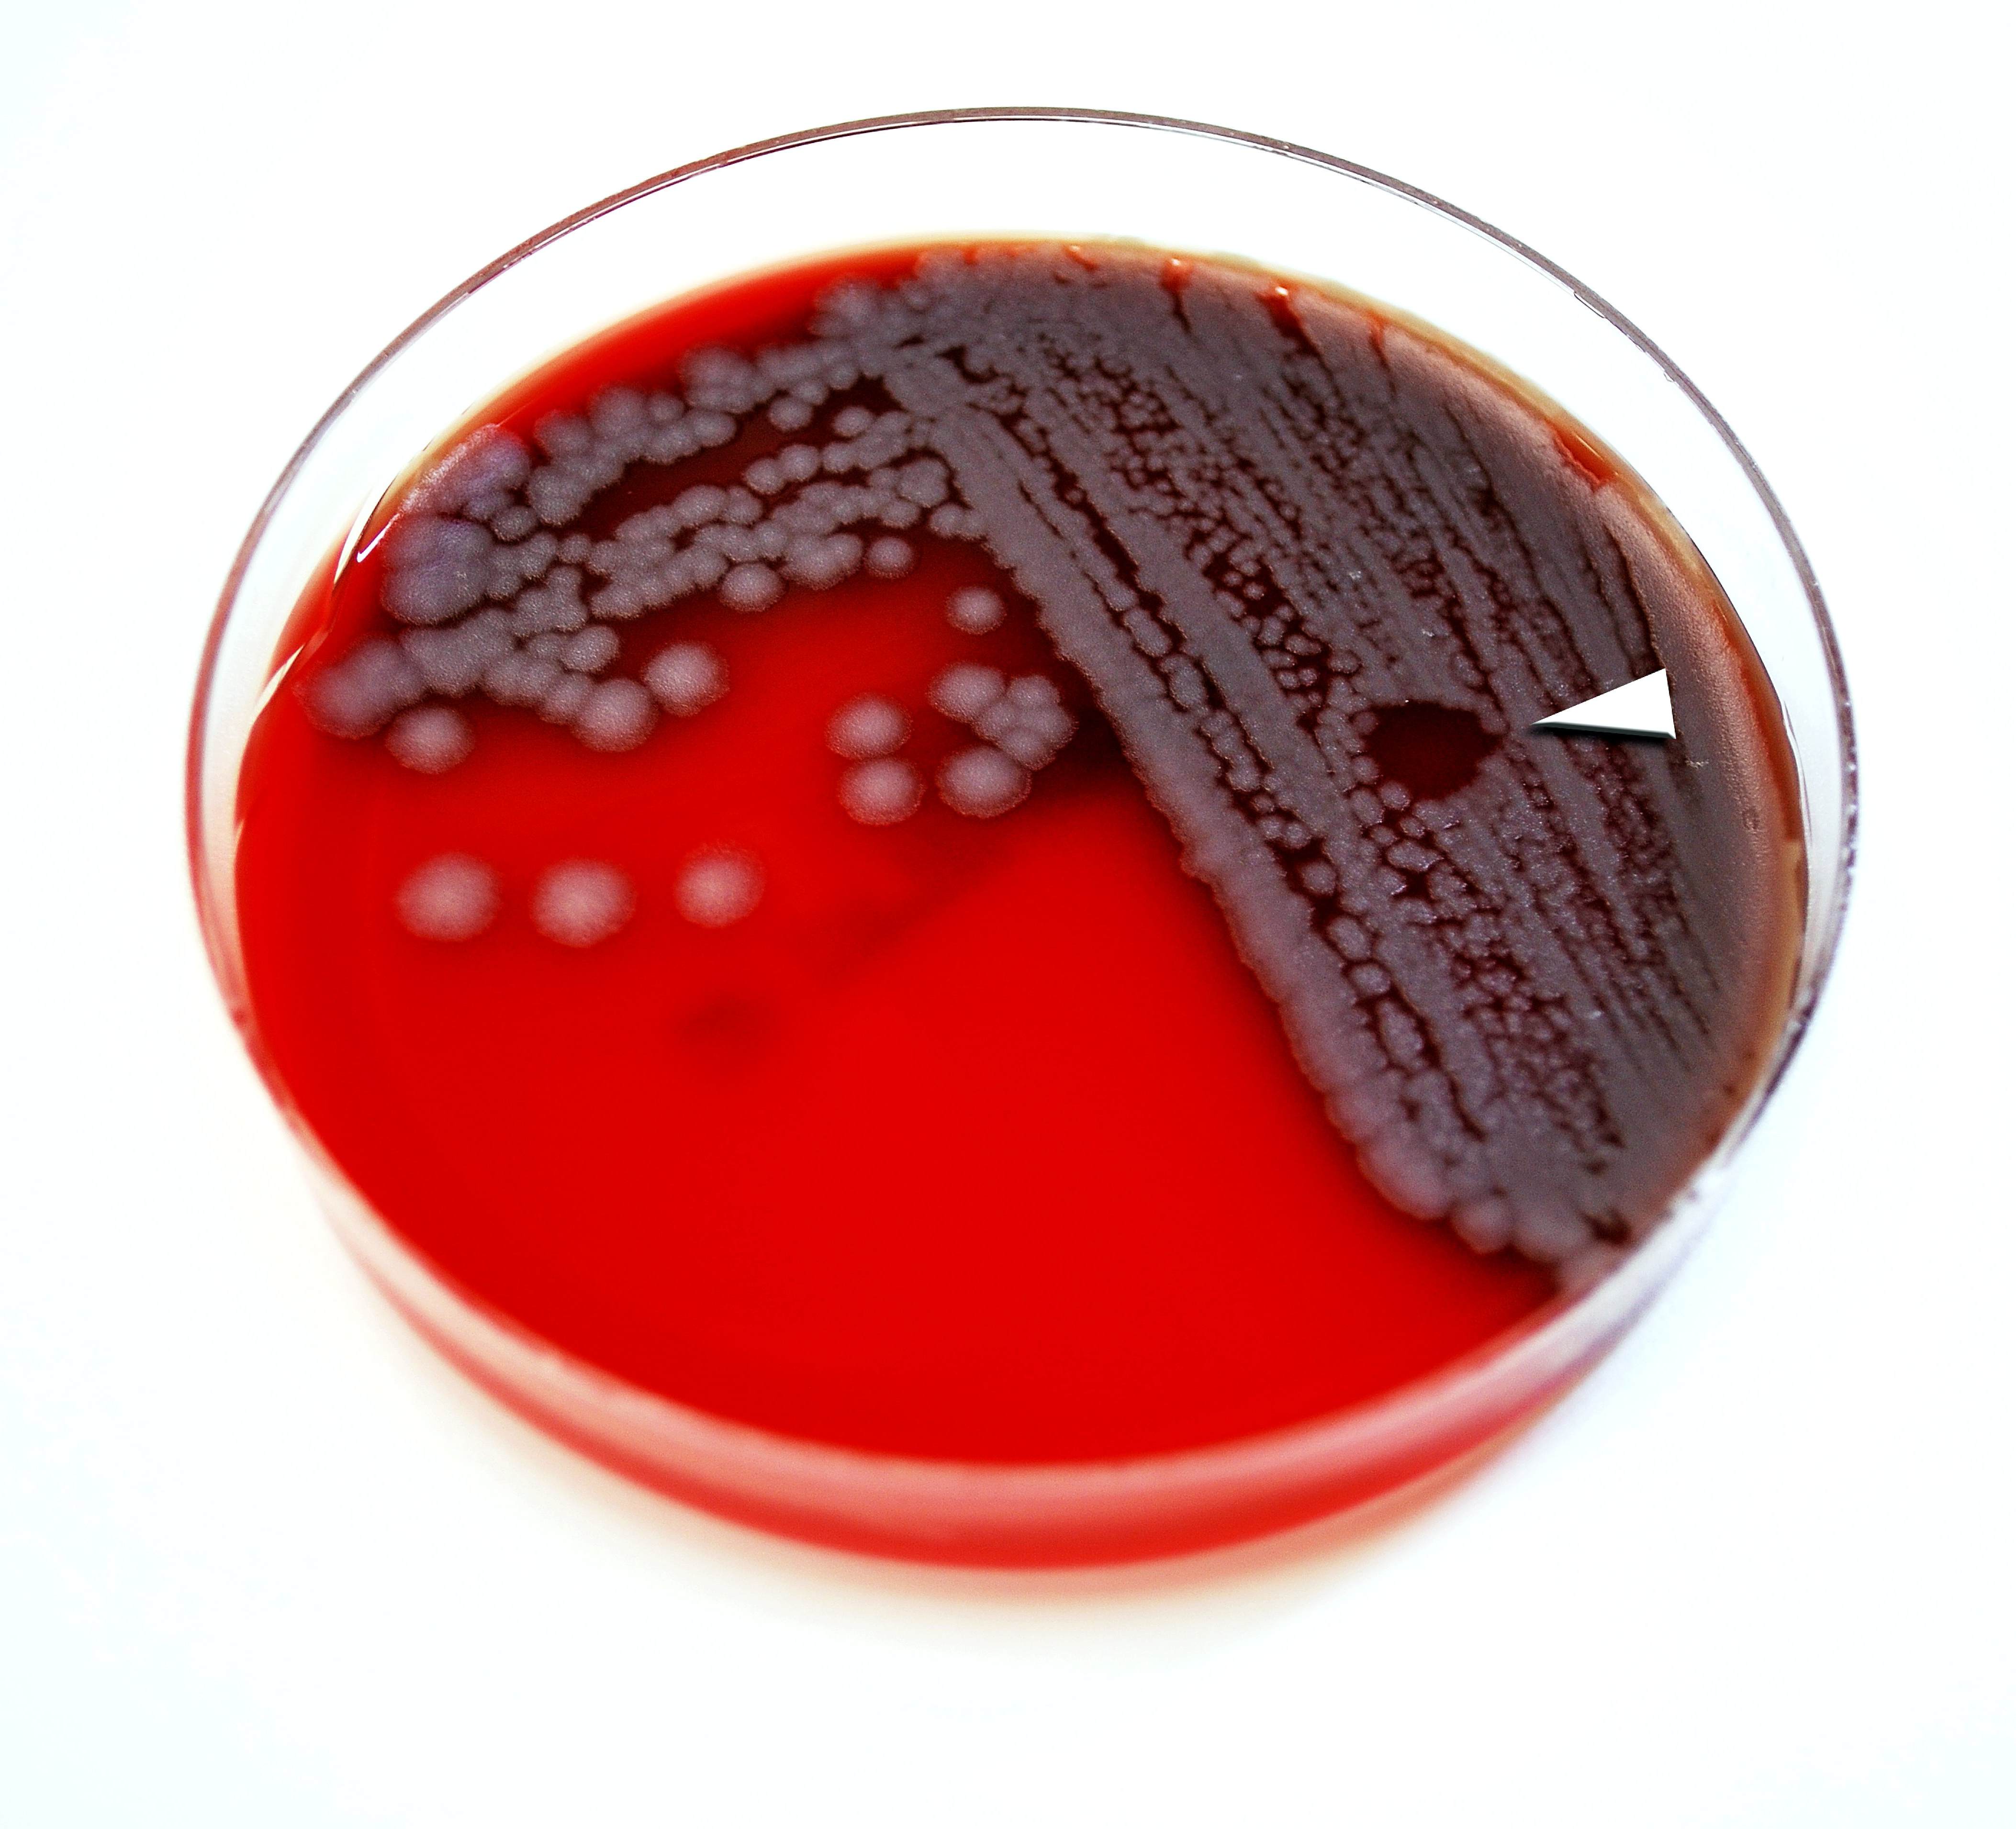 Салфетки язвы. Bacillus anthracis, а22 (Сибирская язва). Bacillus anthracis на кровяном агаре. Бактериоскопия сибирской язвы.